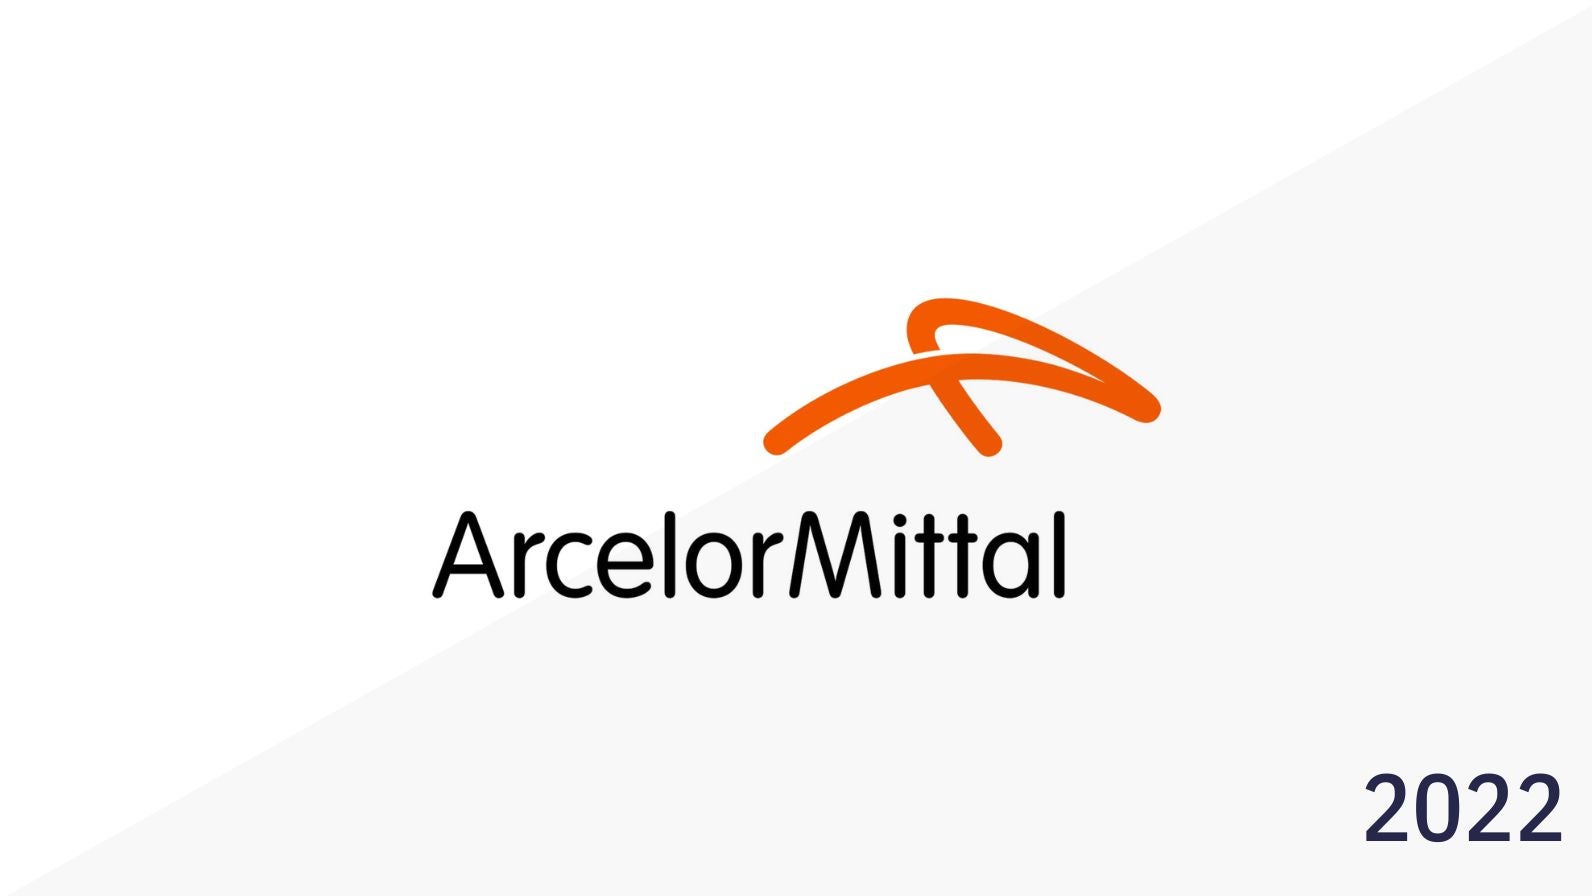 Arcelor mittal